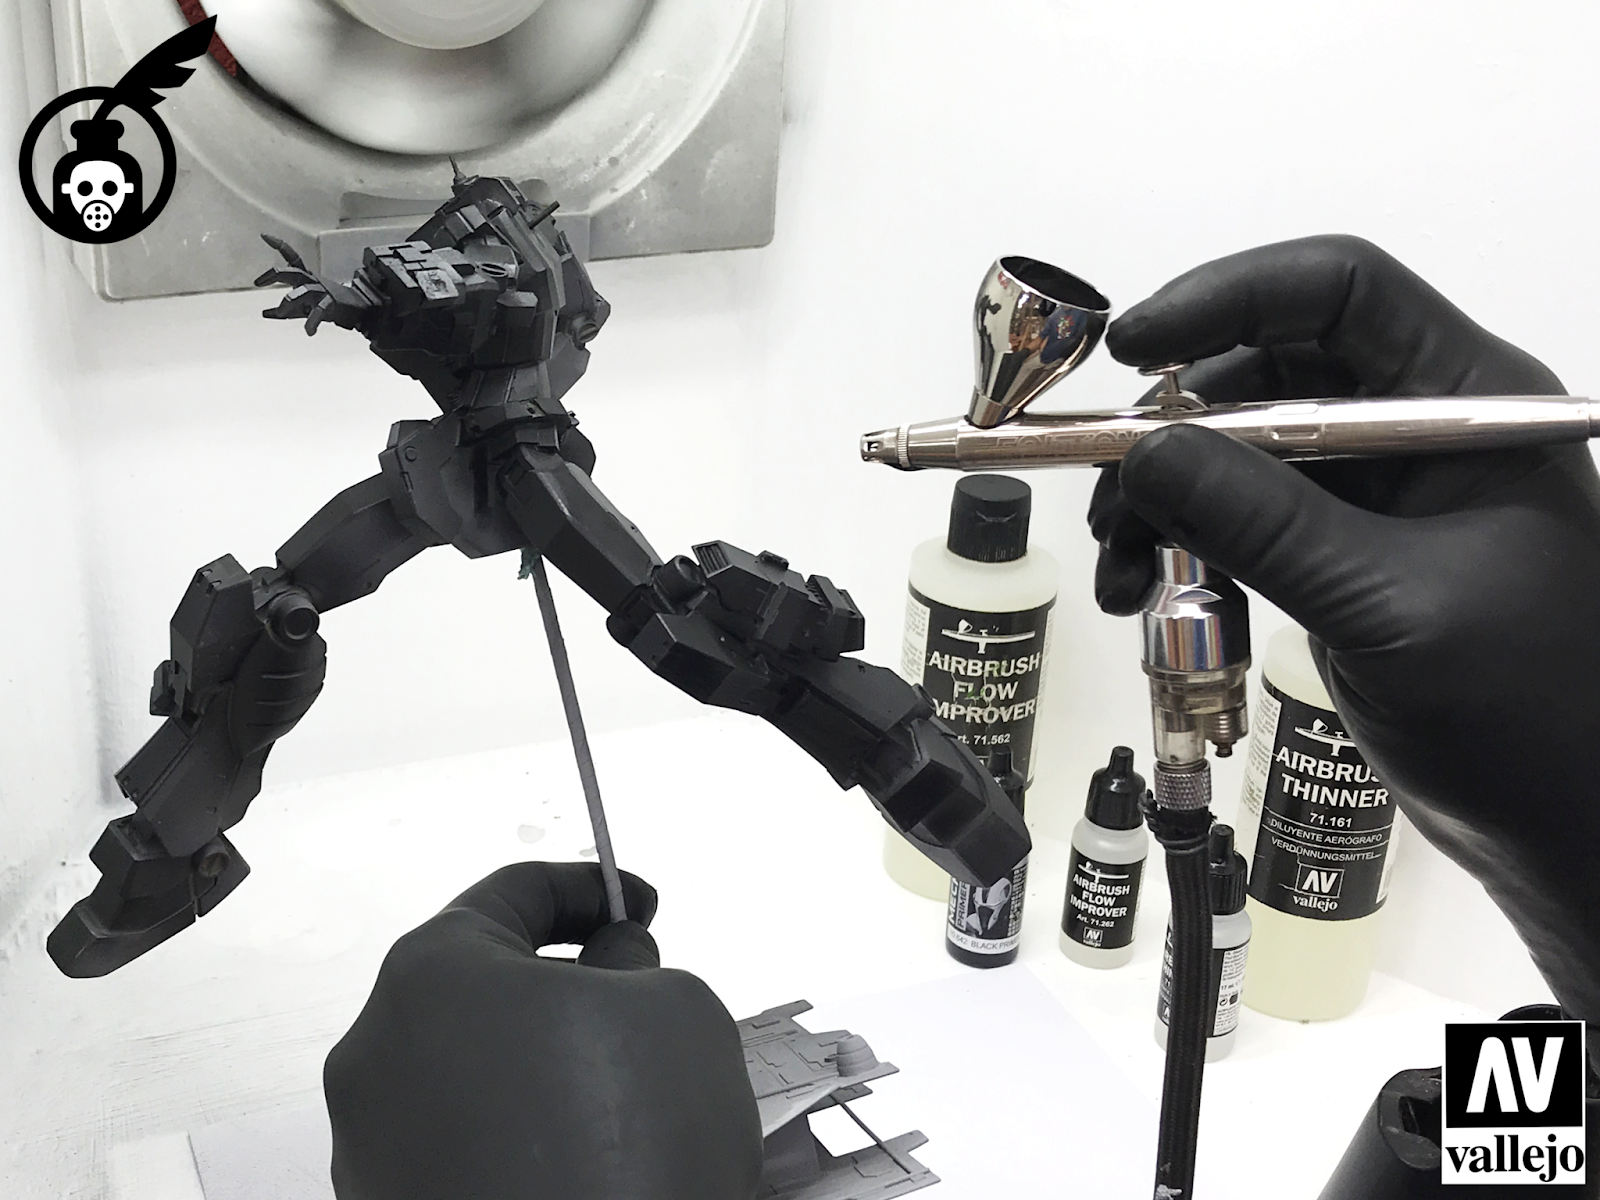 Vallejo AV model paint thinner hand-painted series environmentally